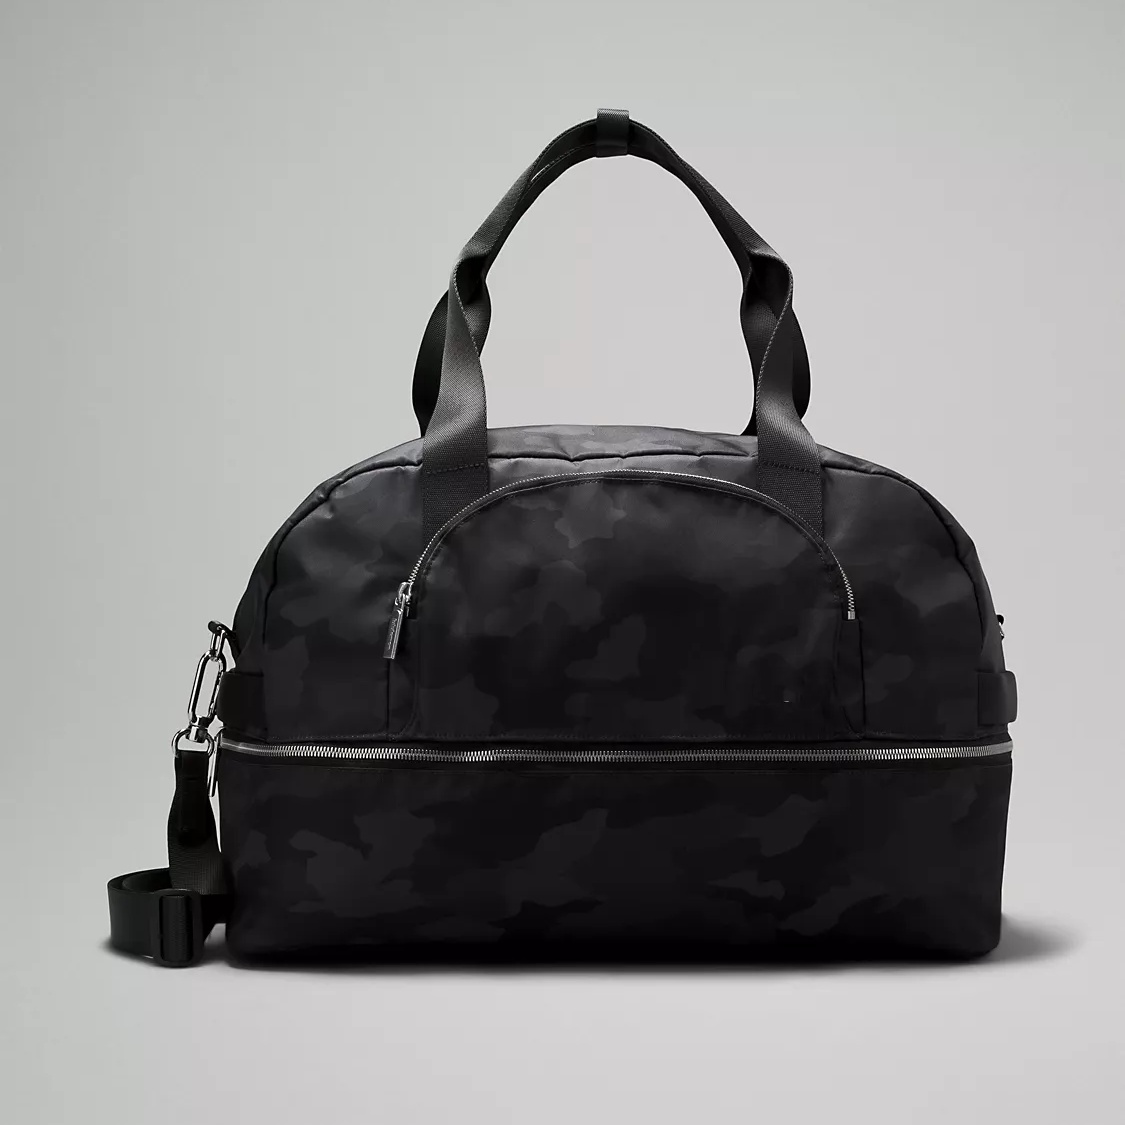 OEM Waterproof  Tote Bag with Trolley-Compatible Sleeve